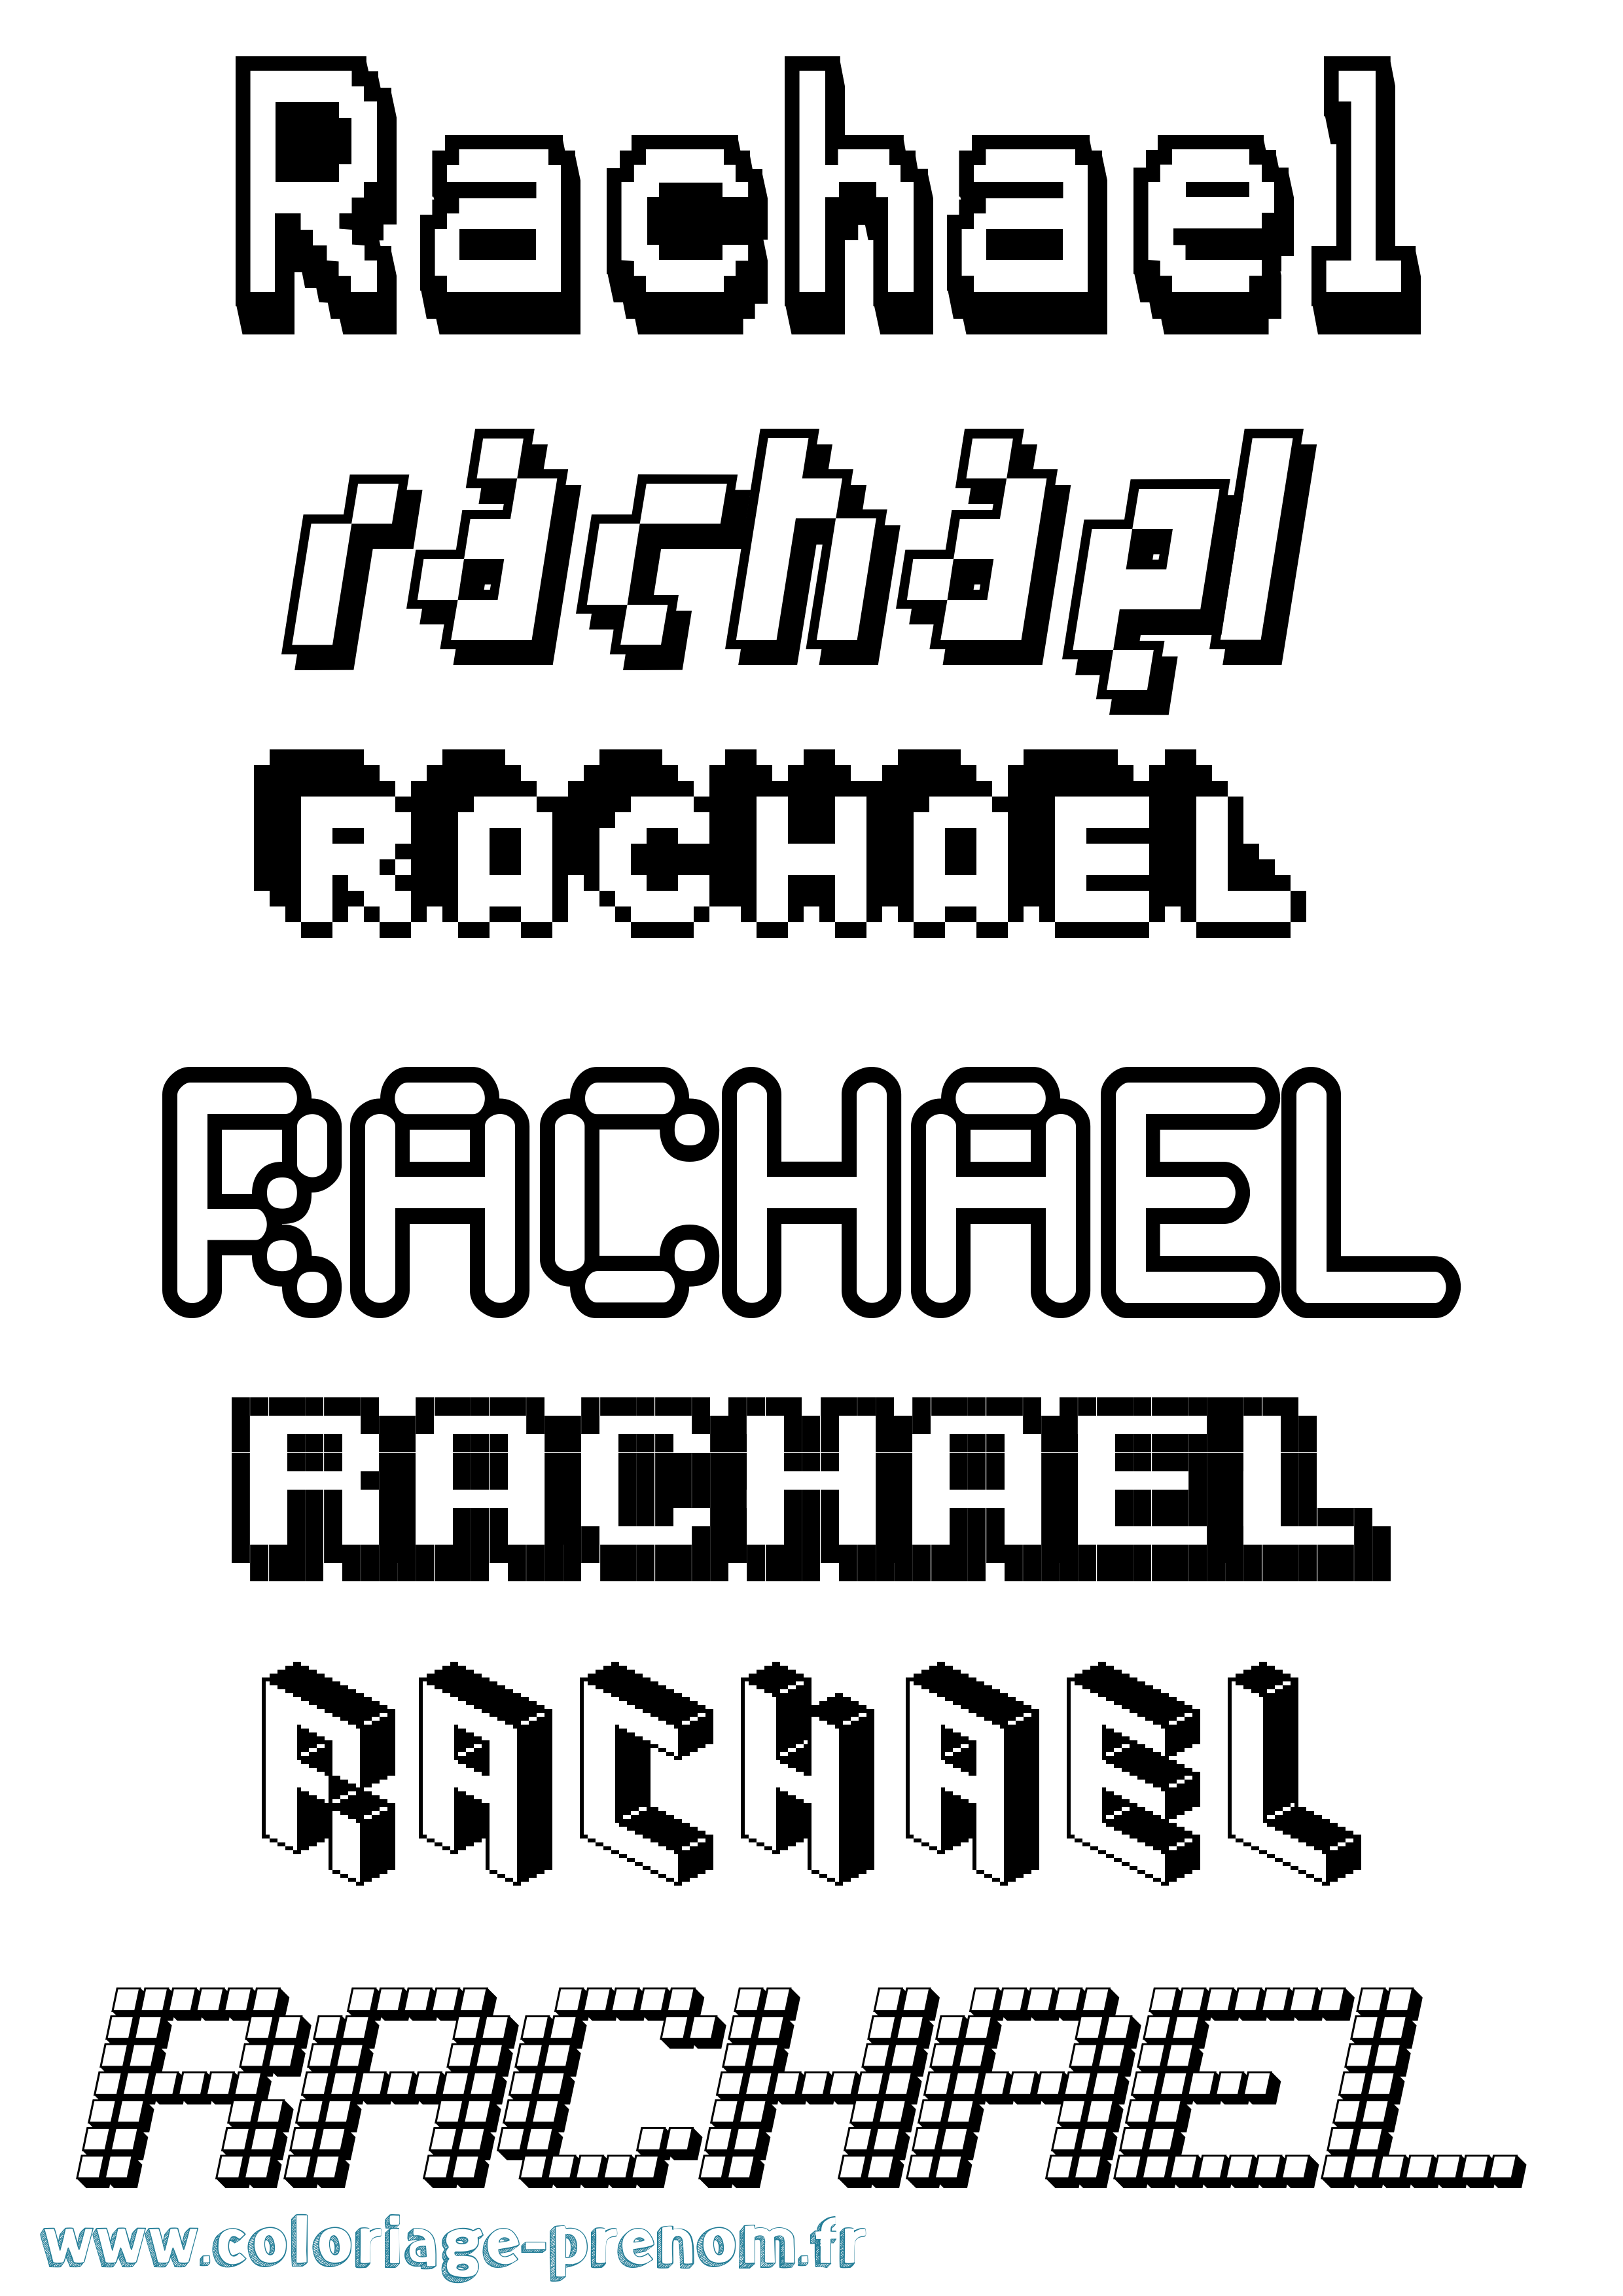 Coloriage prénom Rachael Pixel